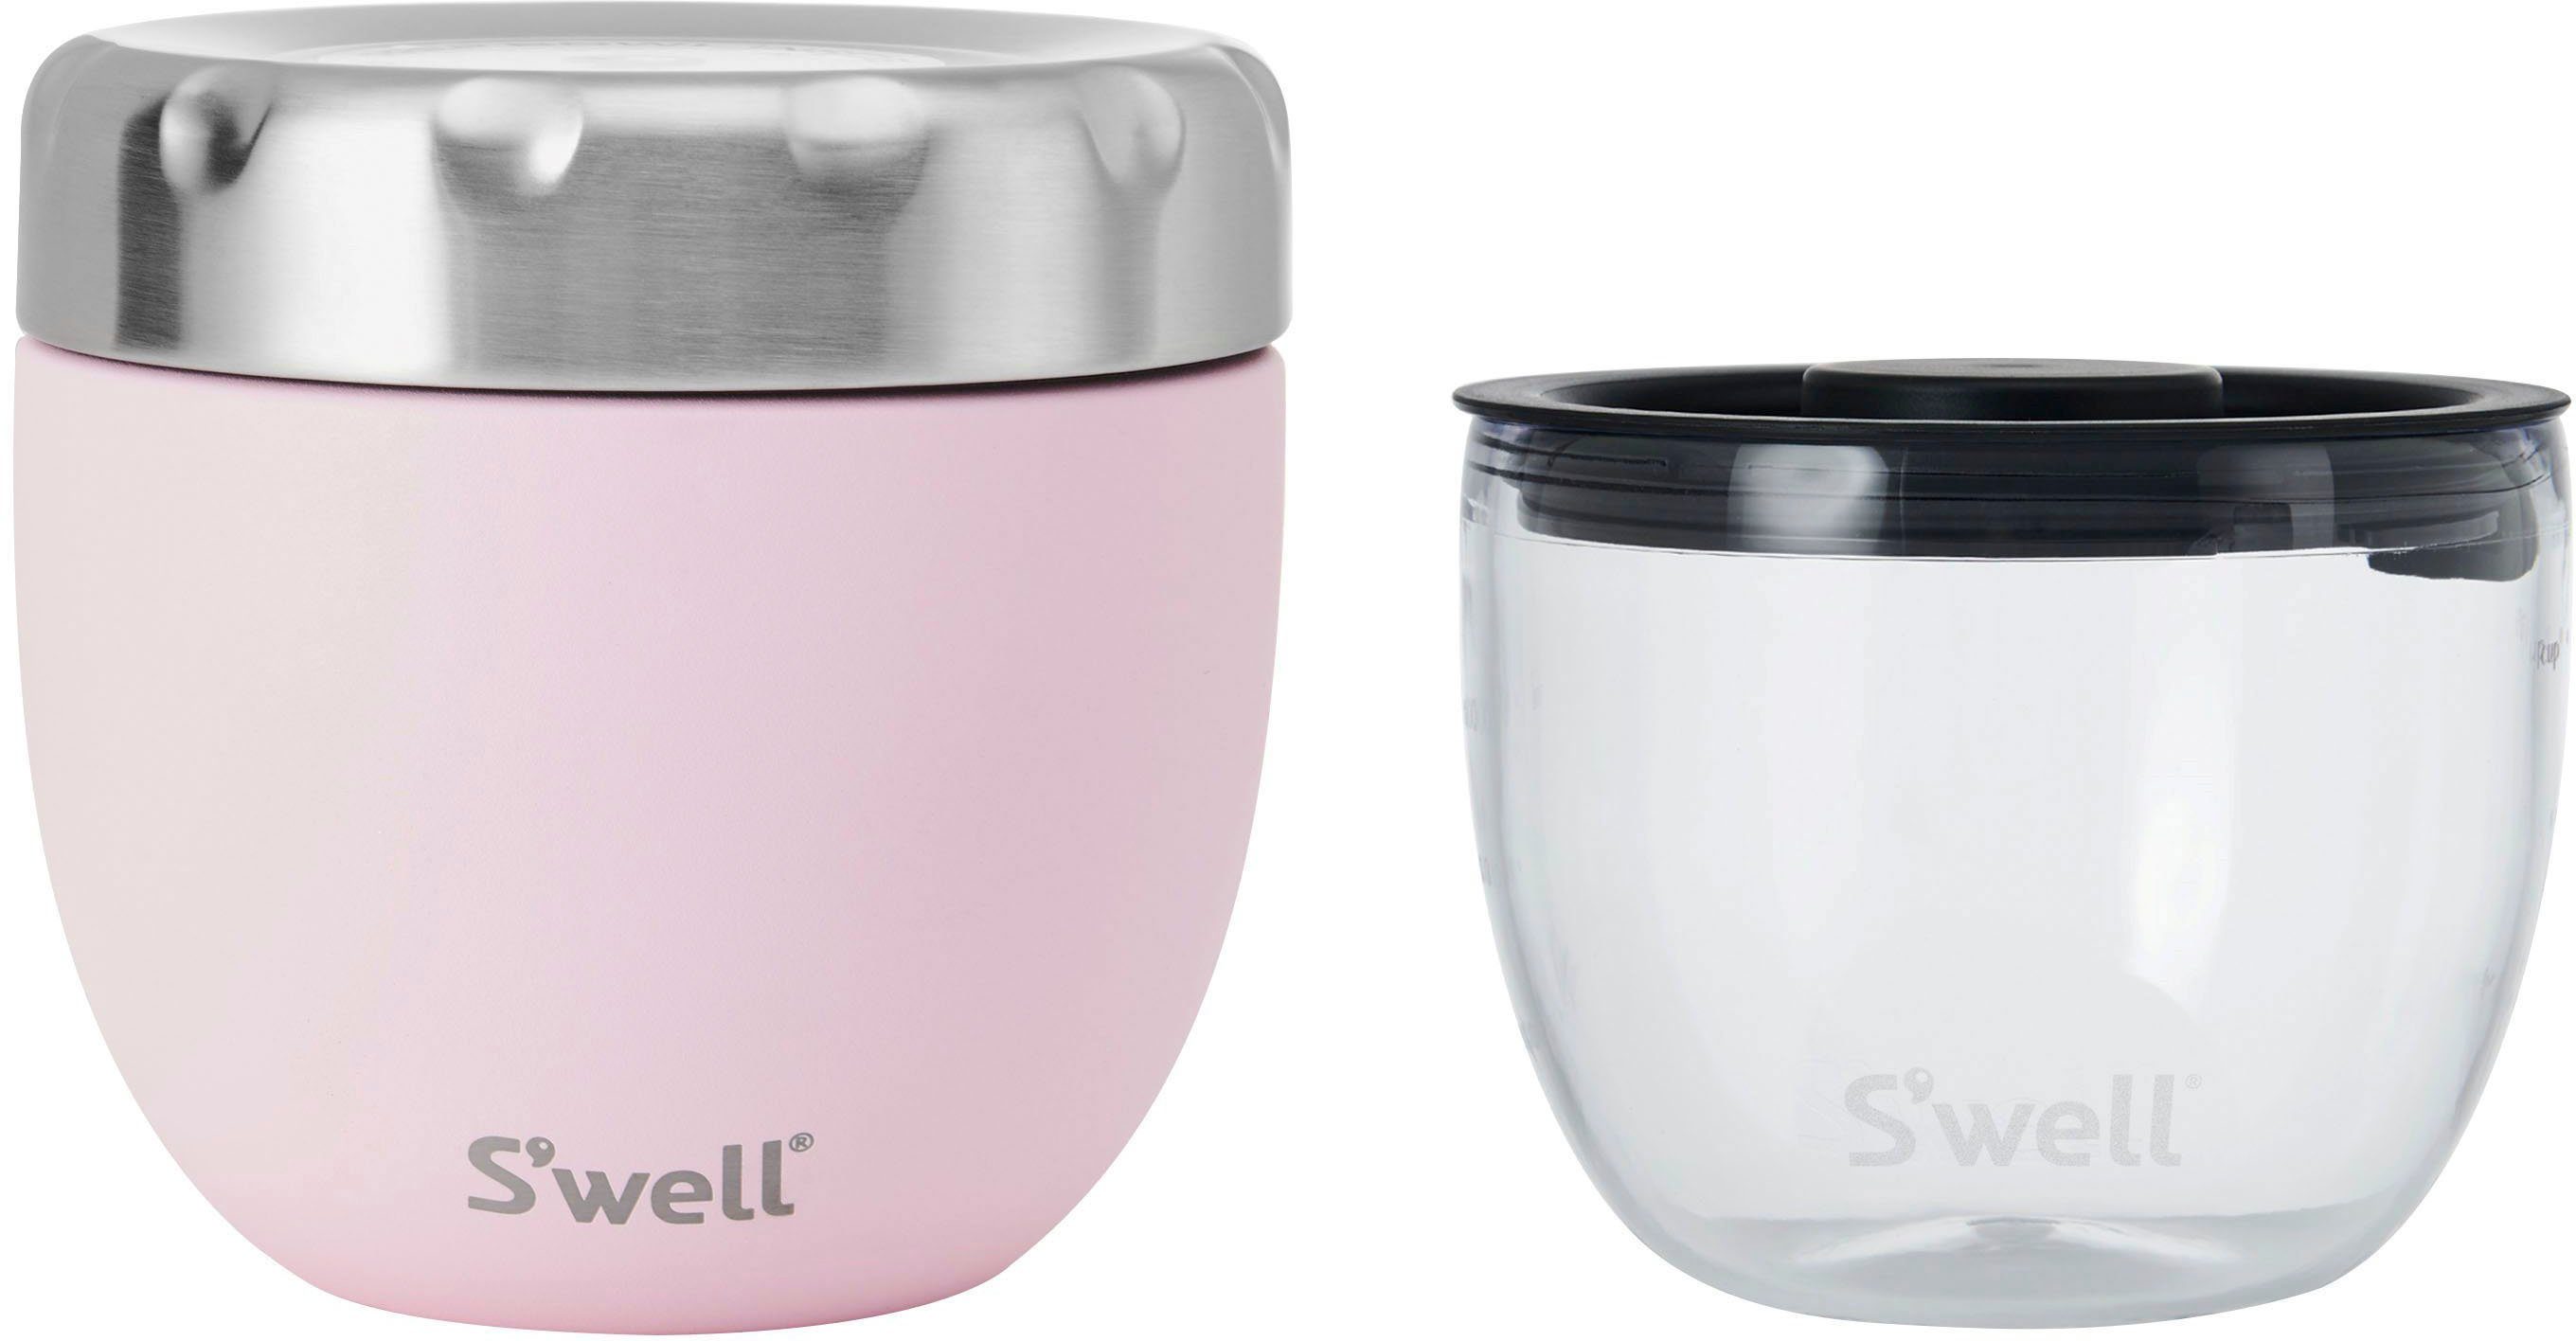 S'well Thermoschüssel 2-in-1 Eats Therma-S'well®-Technologie Pink dreischichtiger Außenschale Bowl, Edelstahl, mit S’well Food Topaz (2-tlg)